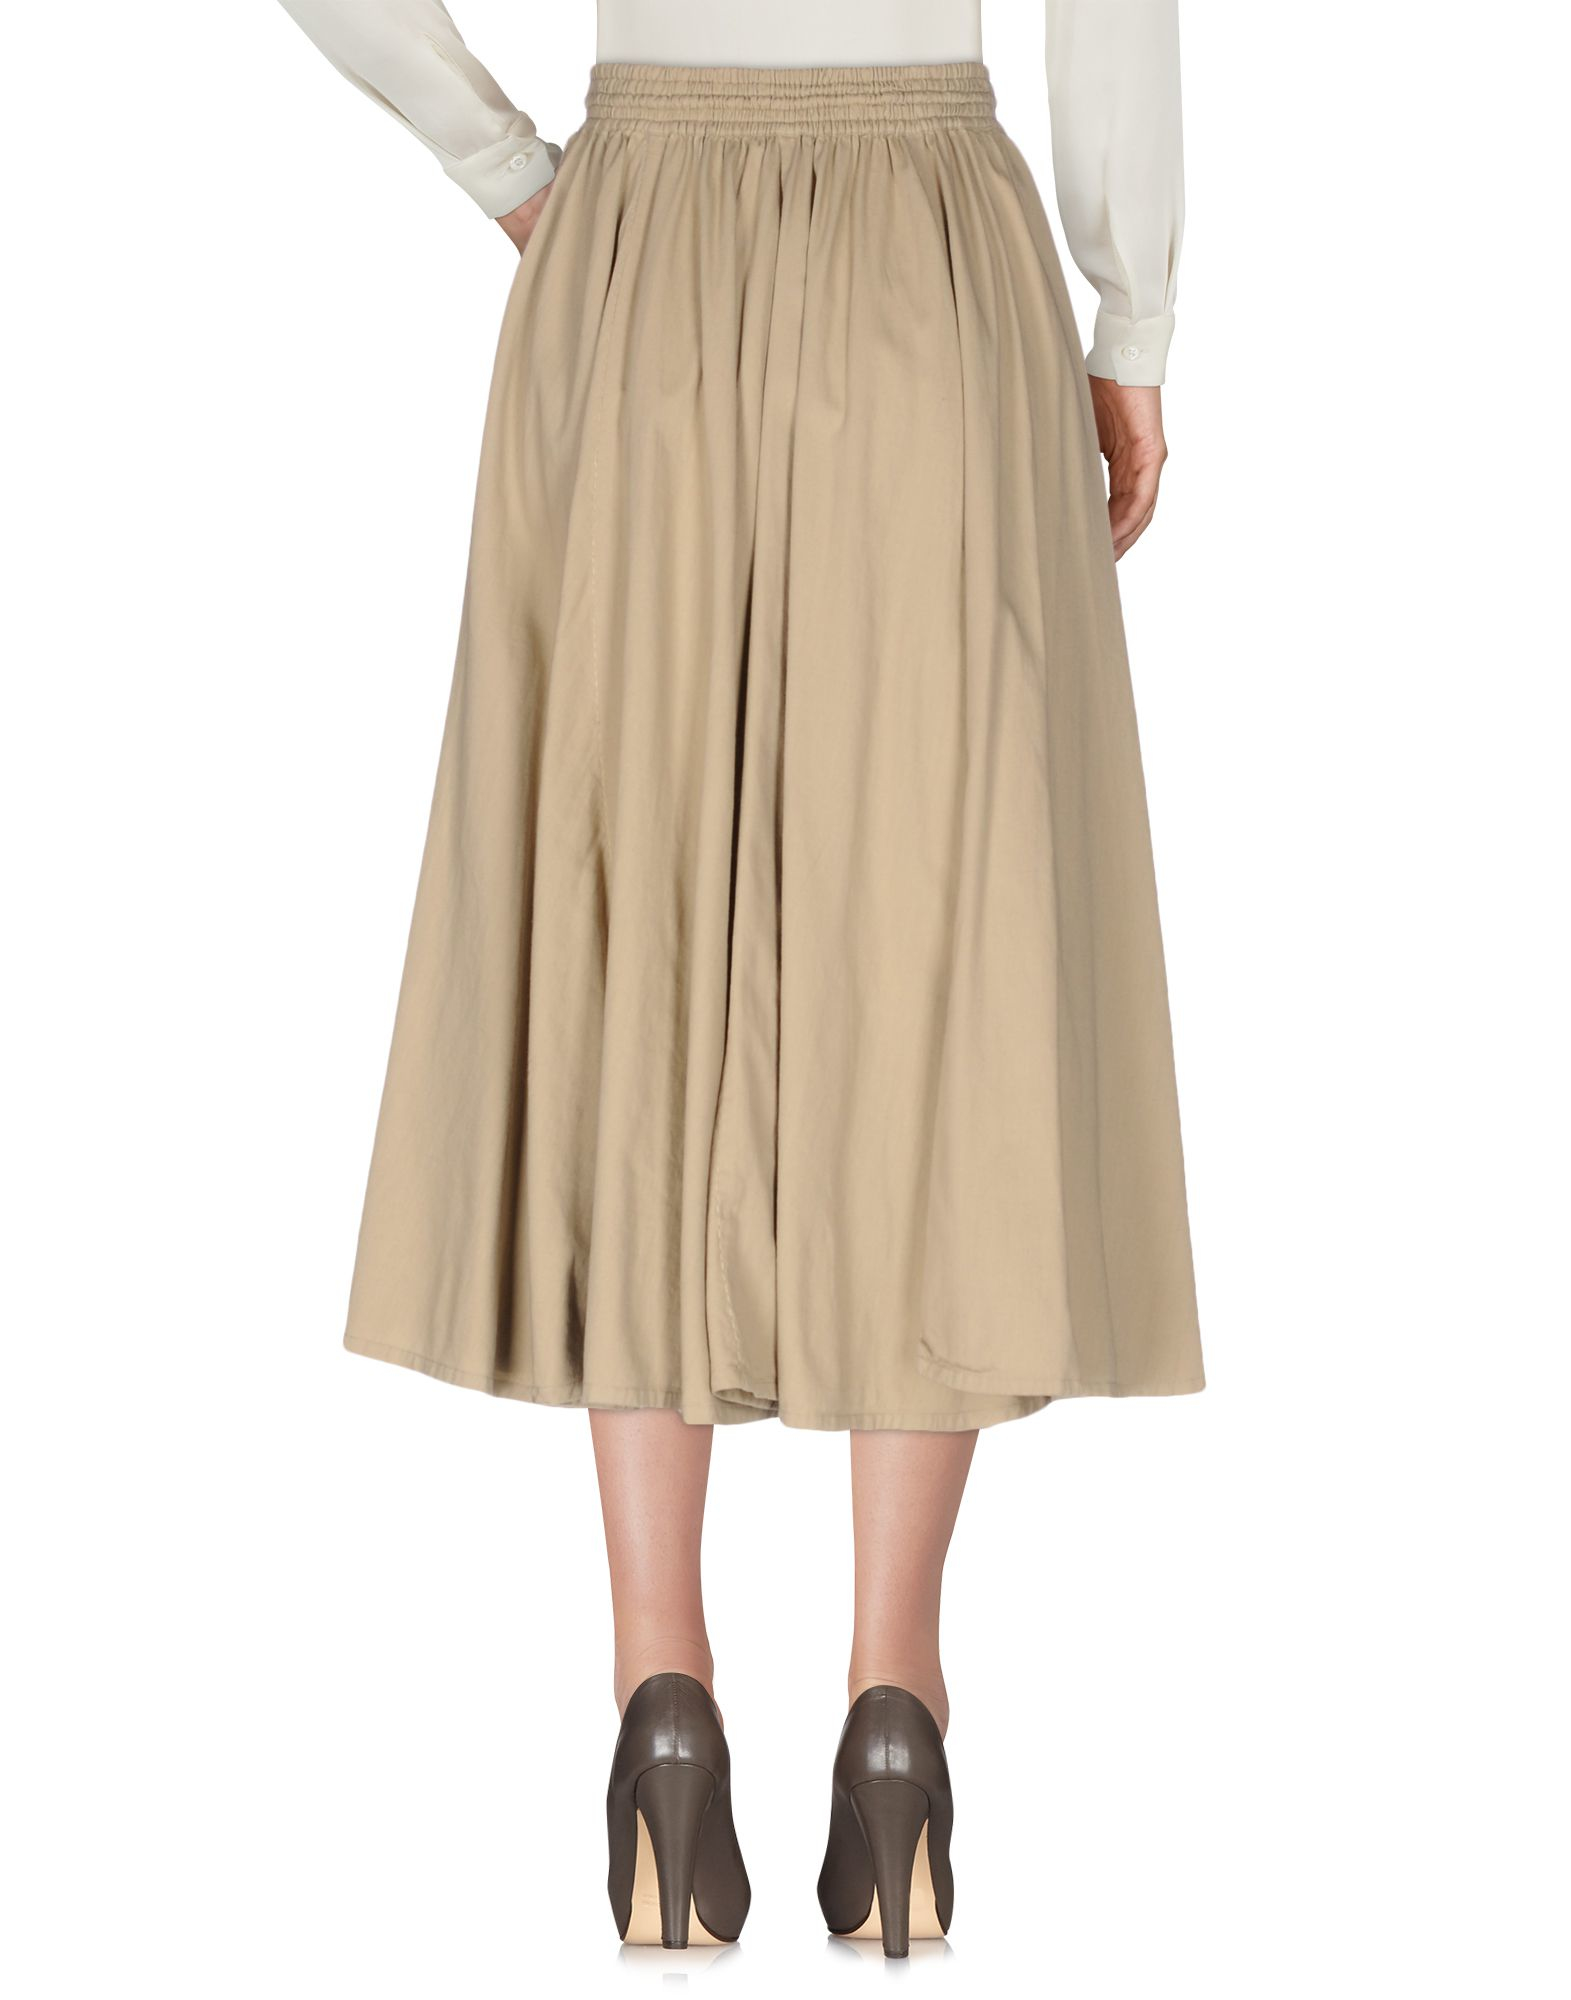 Lyst - Mes Demoiselles 3/4 Length Skirt in Natural